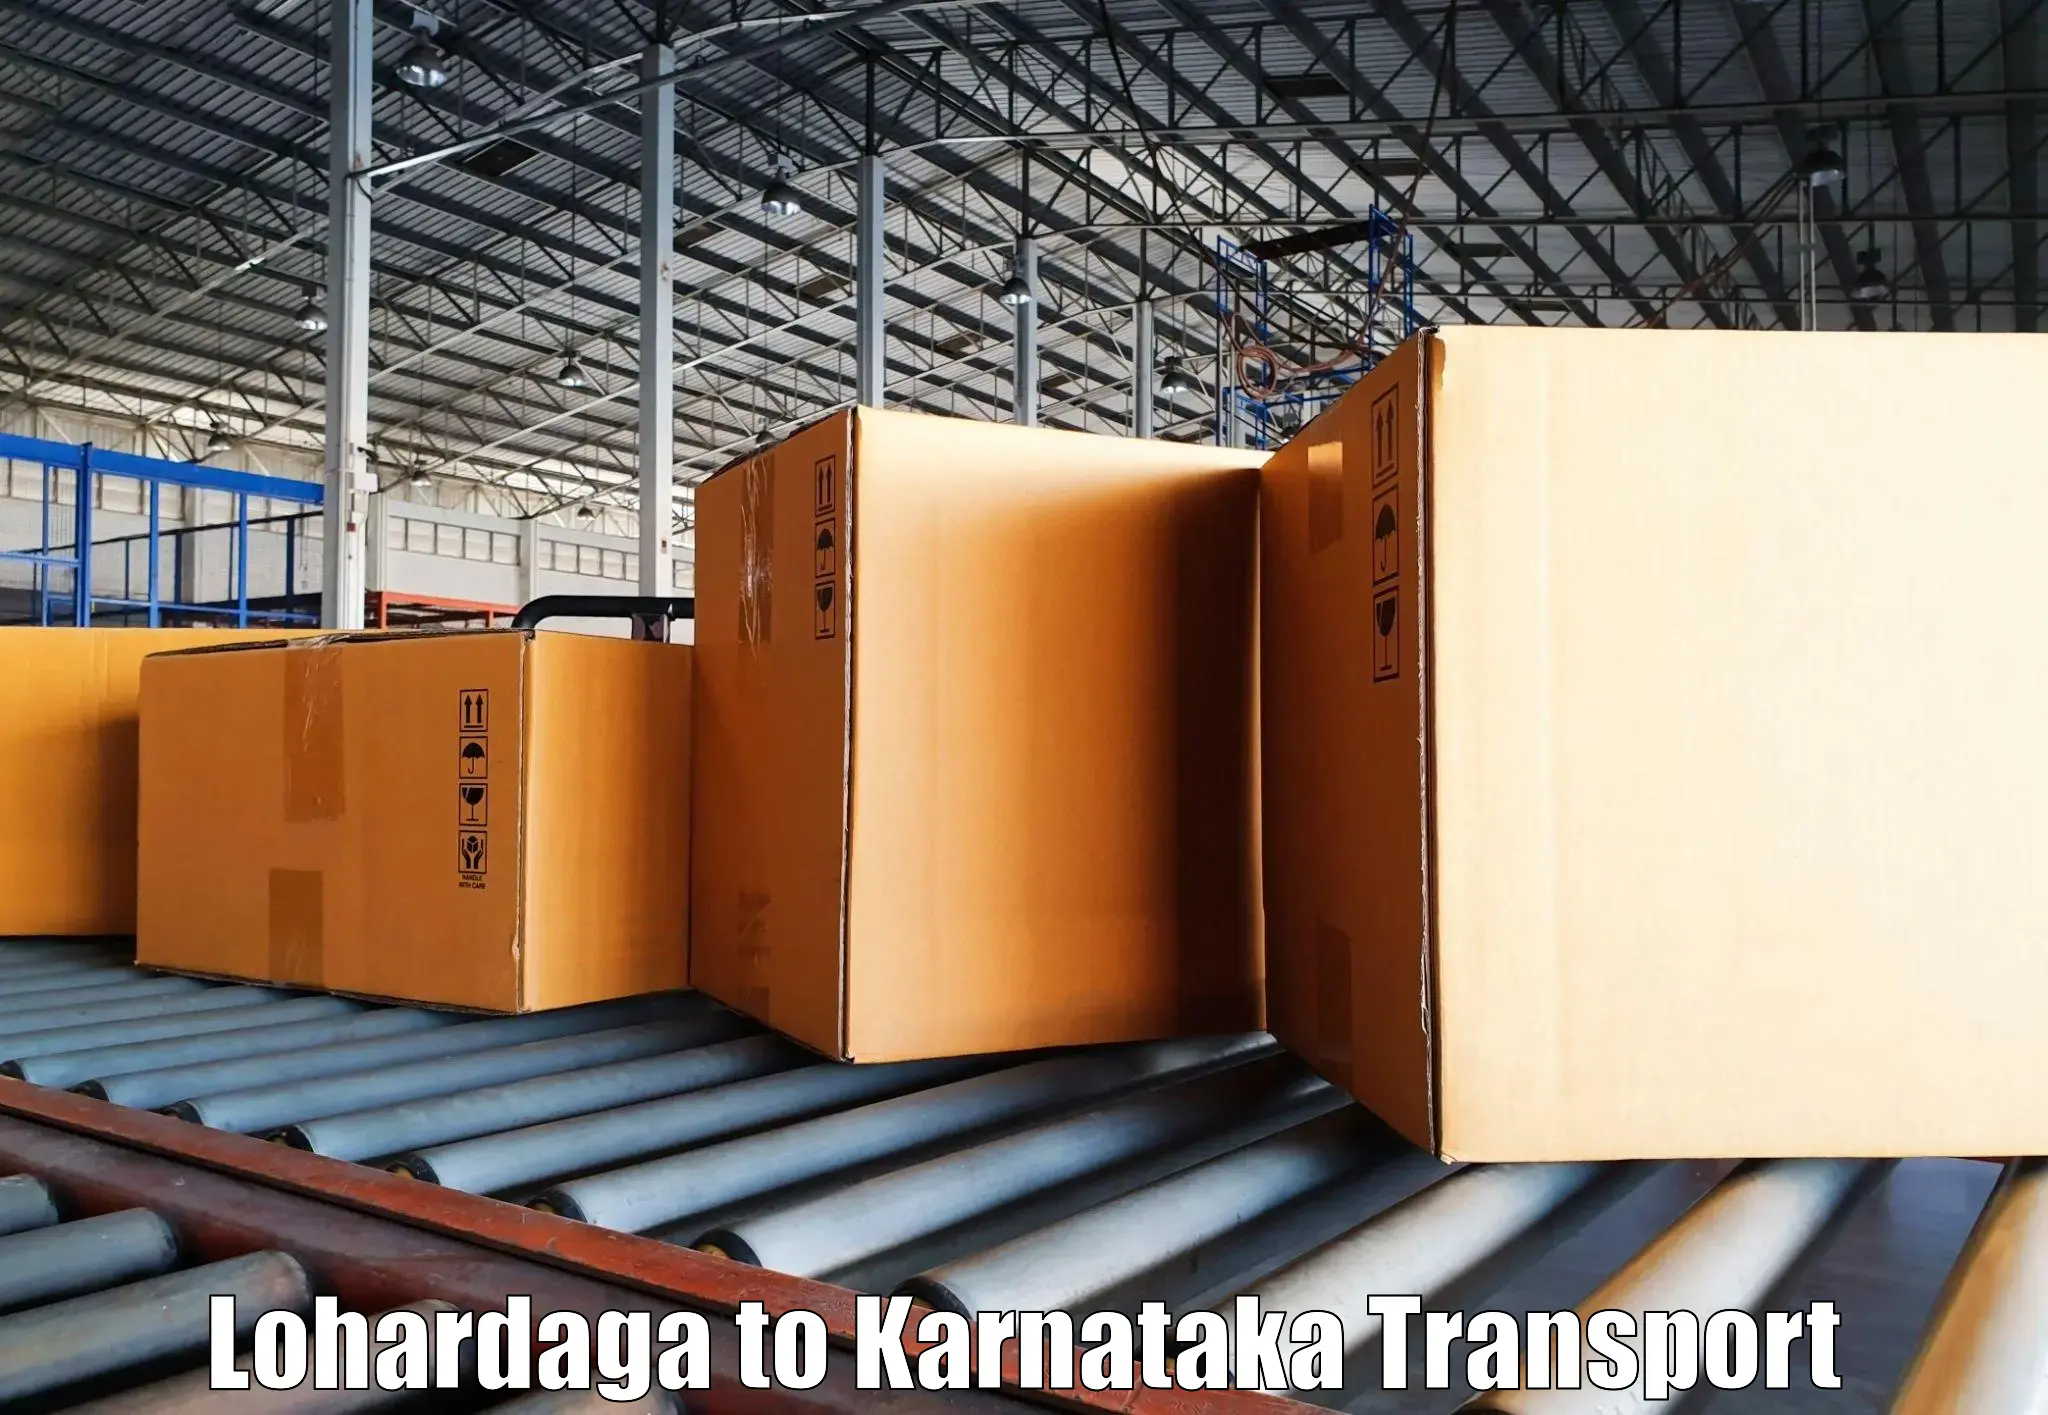 Truck transport companies in India Lohardaga to Belgaum